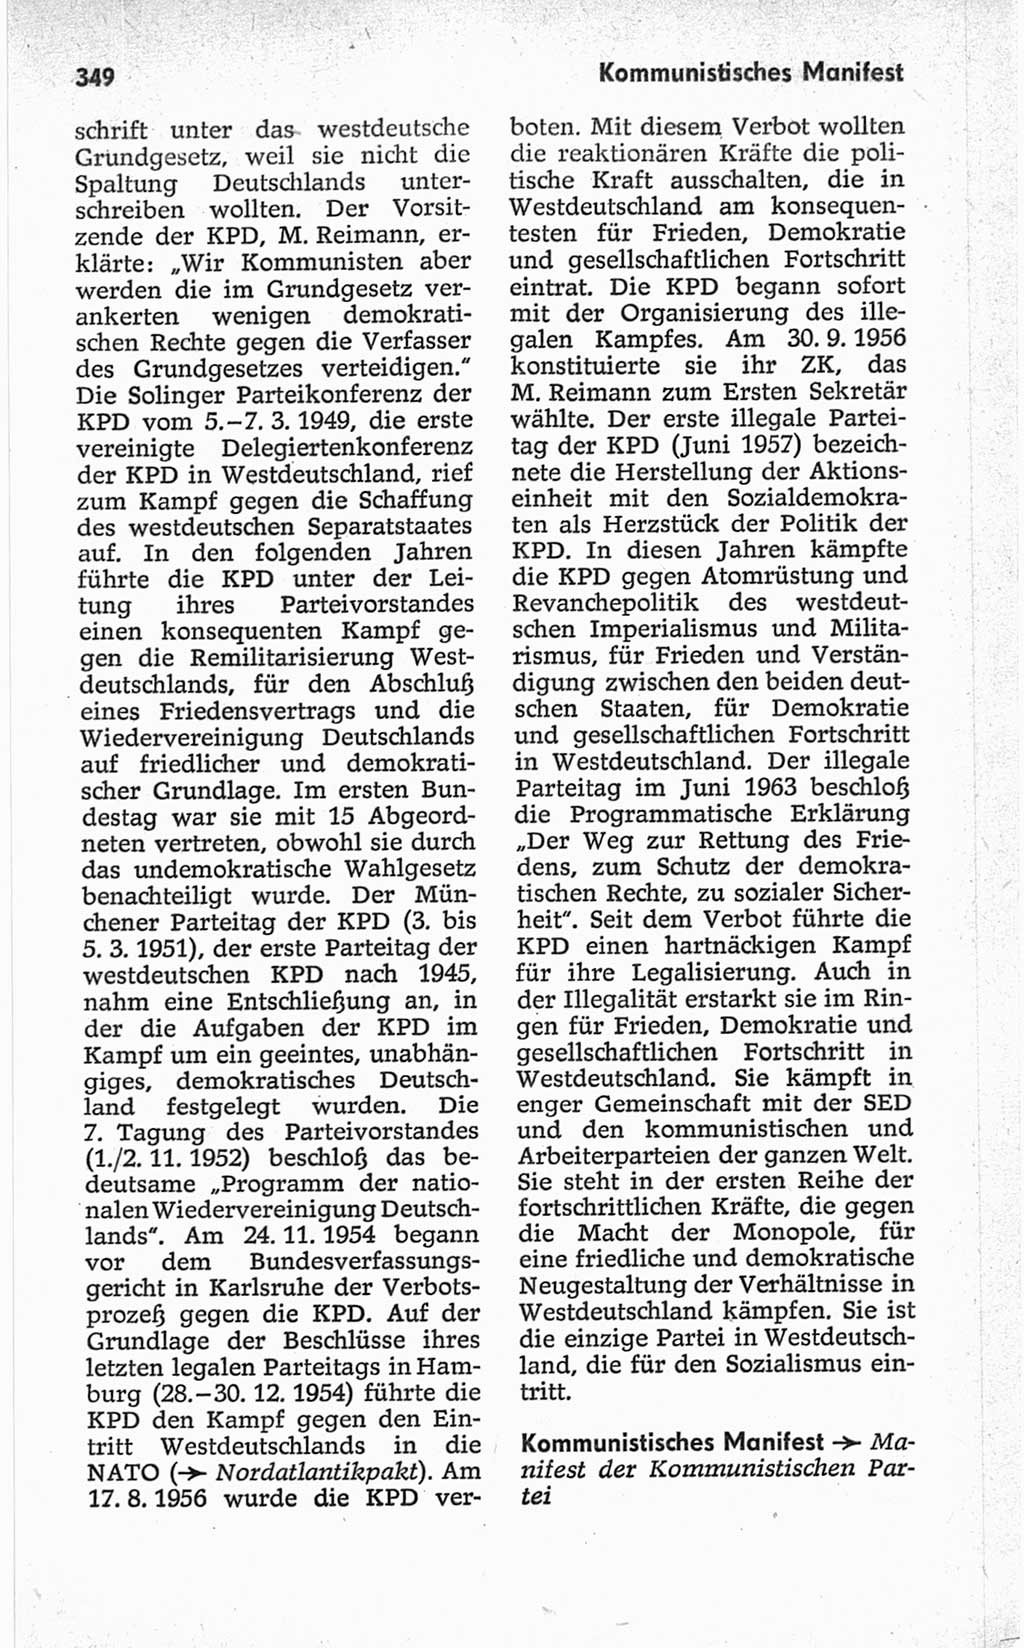 Kleines politisches Wörterbuch [Deutsche Demokratische Republik (DDR)] 1967, Seite 349 (Kl. pol. Wb. DDR 1967, S. 349)